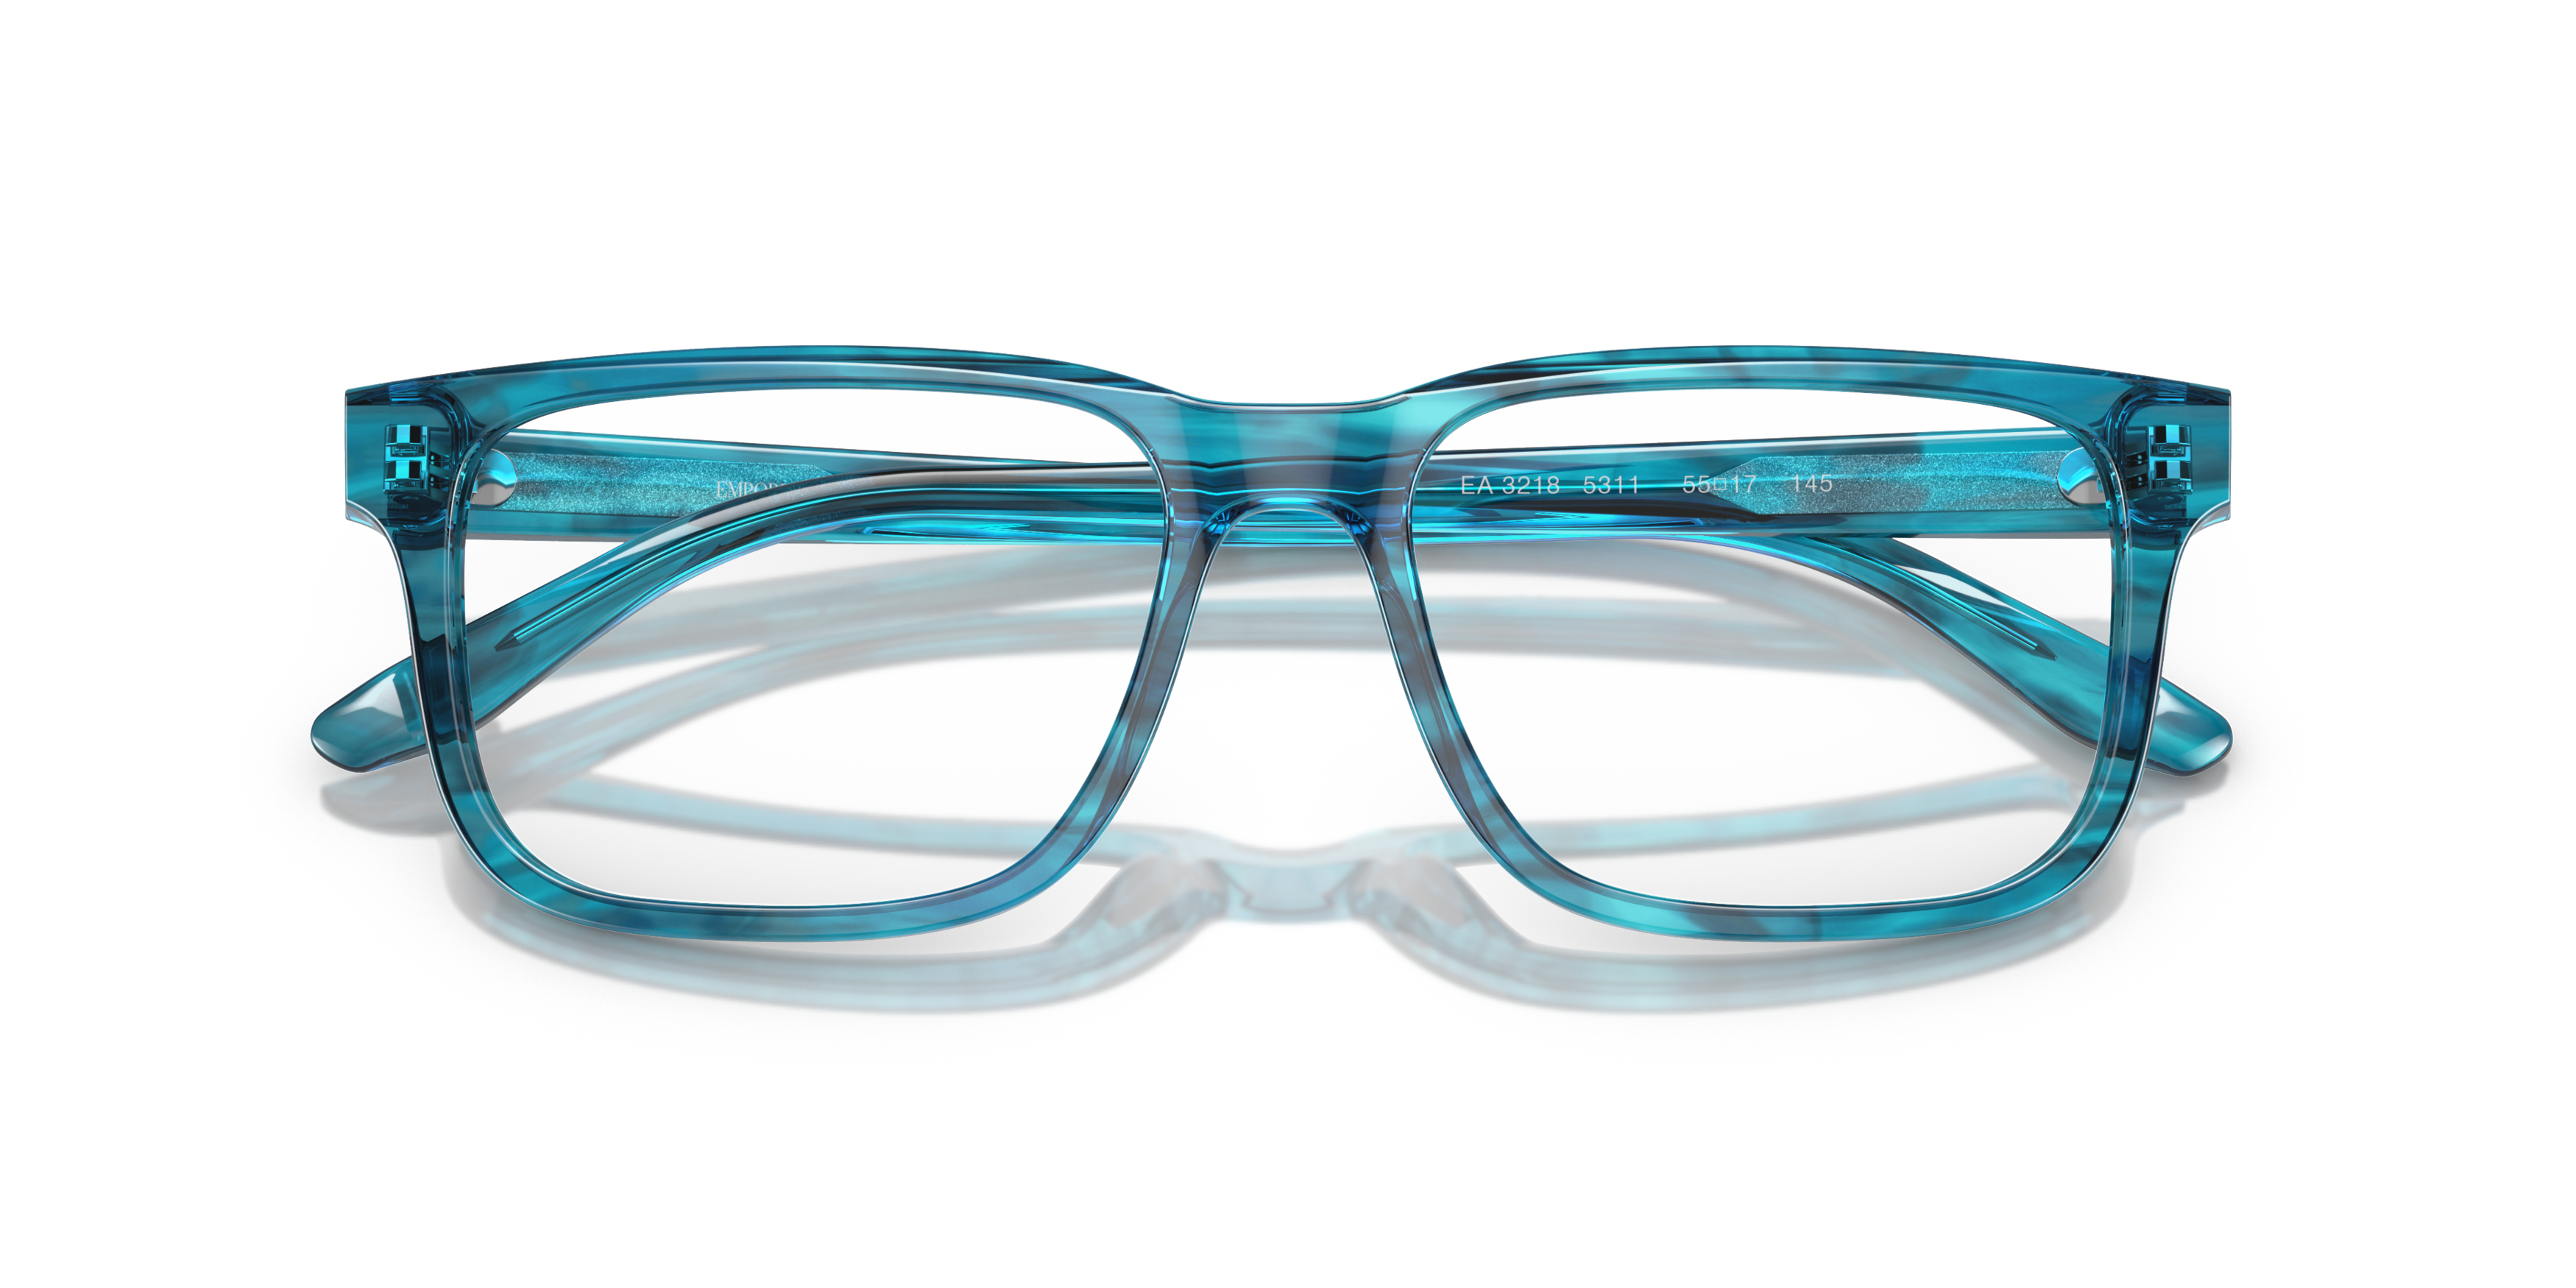 Folded Emporio Armani EA 3218 Glasses Transparent / Blue